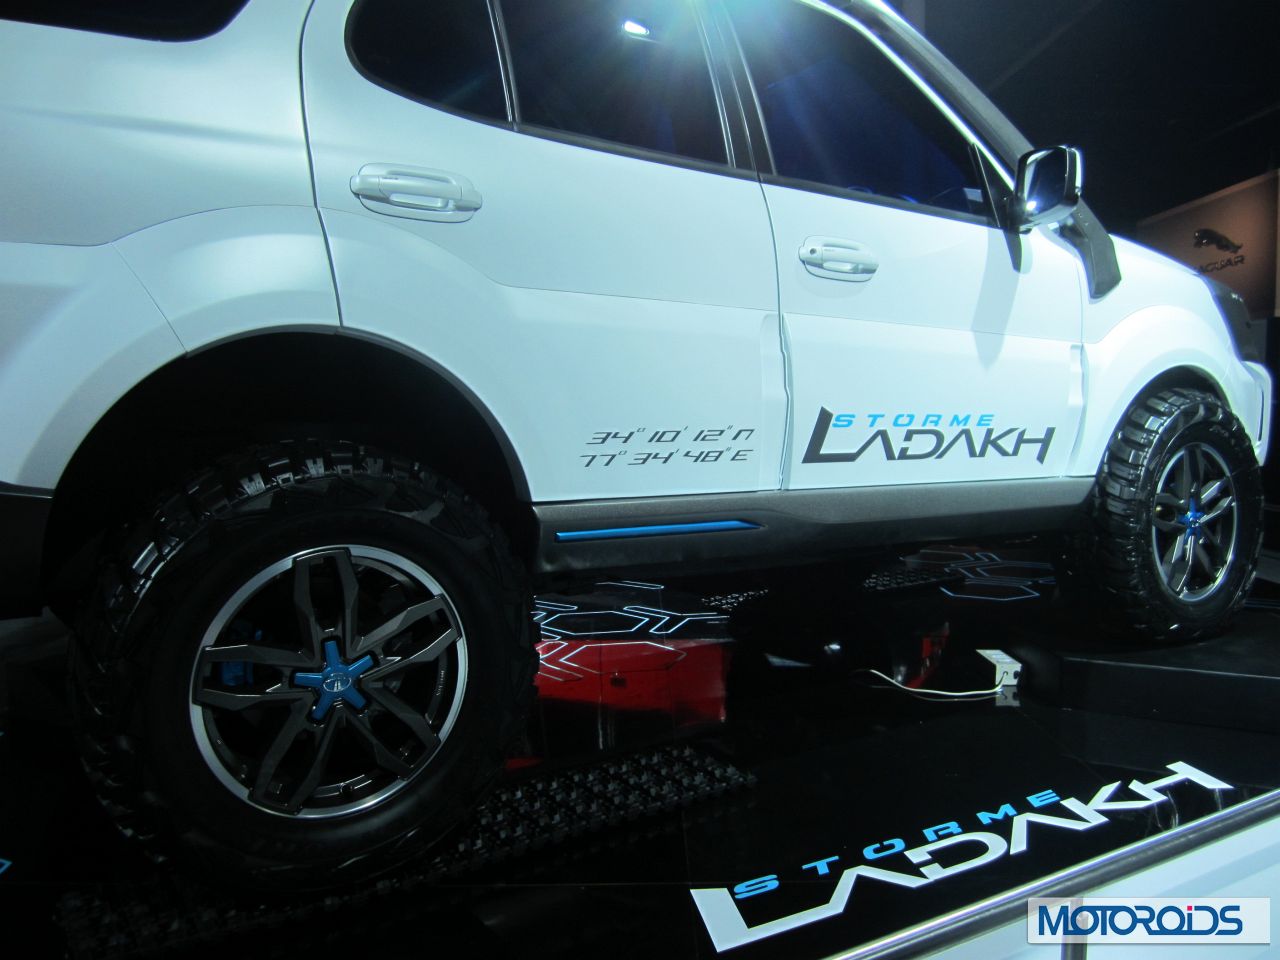 Auto Expo 2014 Tata Motors Showcases Safari Storme Ladakh